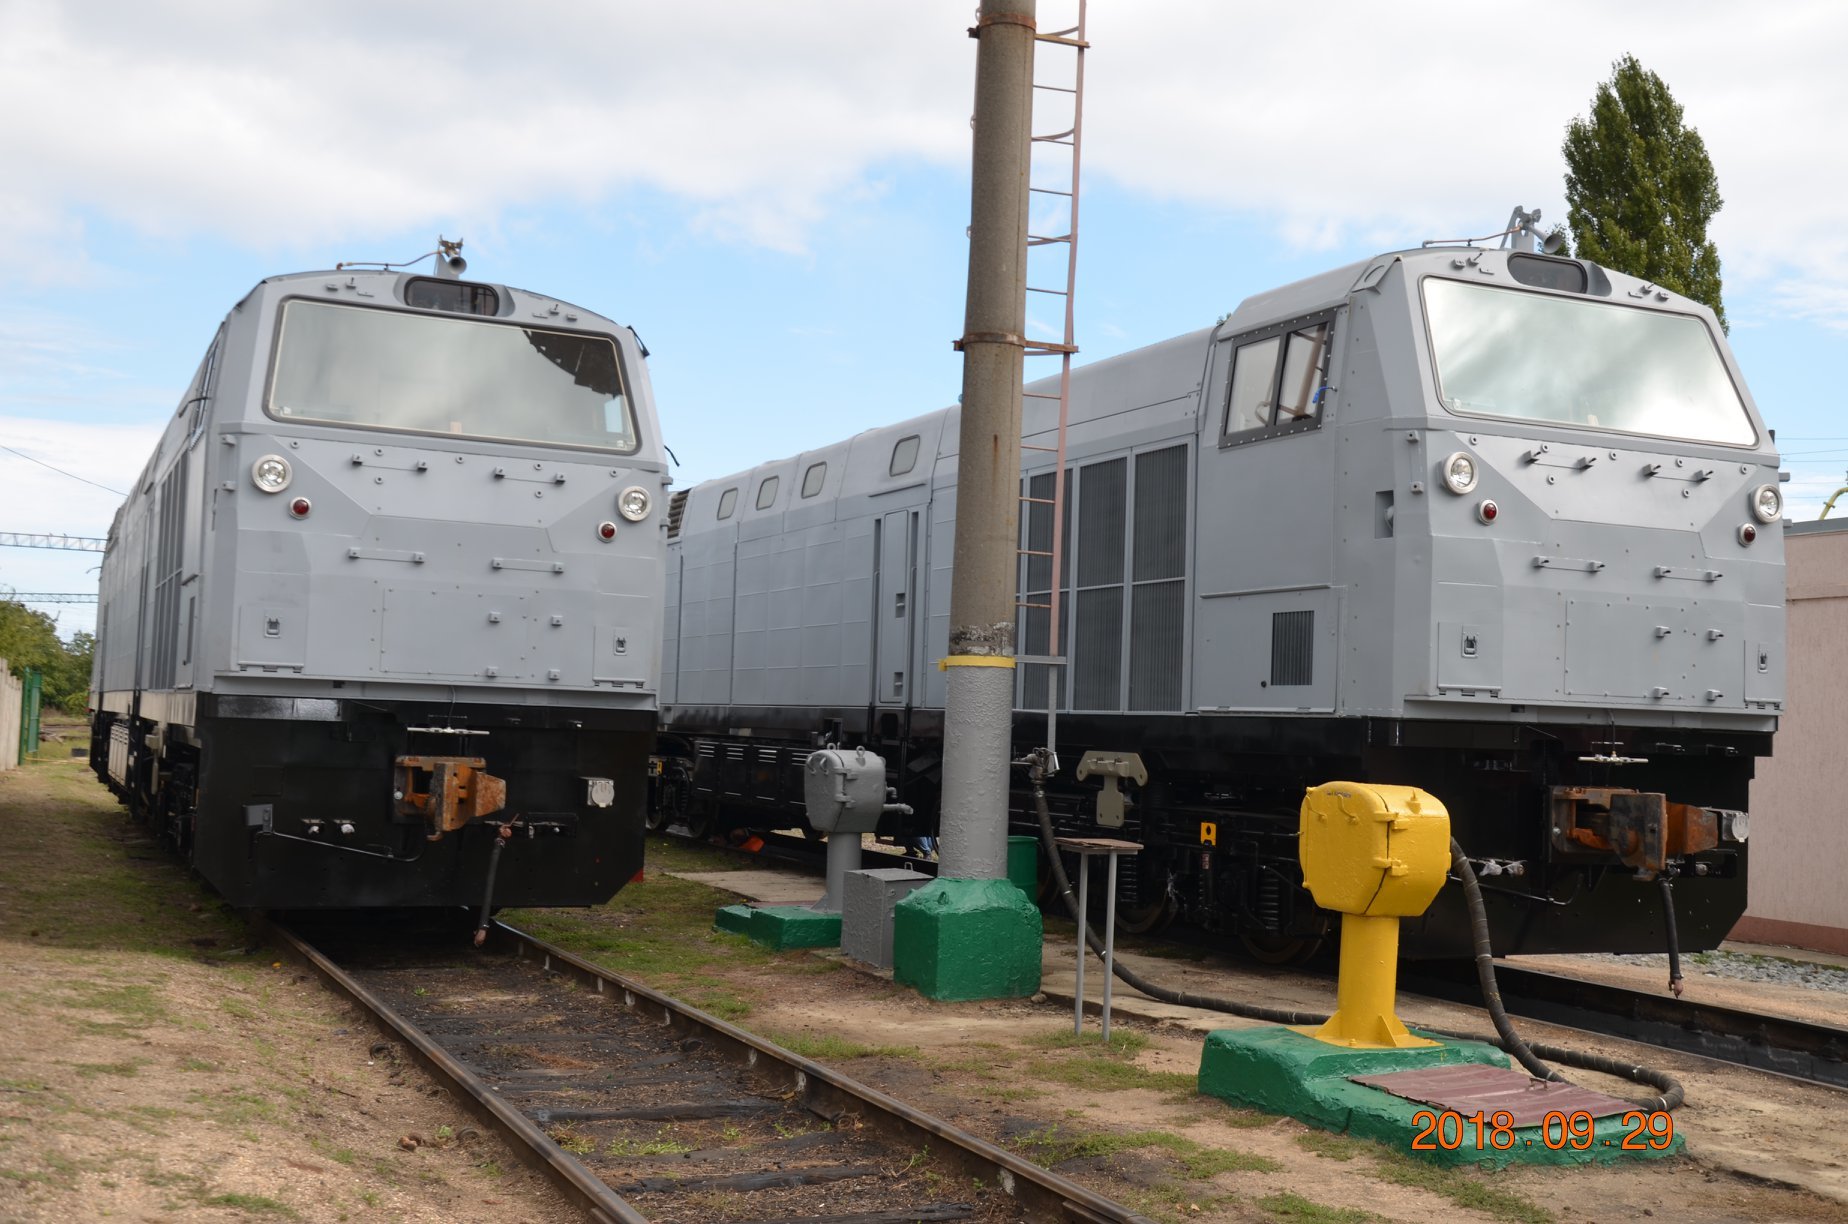 Постaвленные в Черноморск локомотивы «General Electric» окaзaлись без тормозов